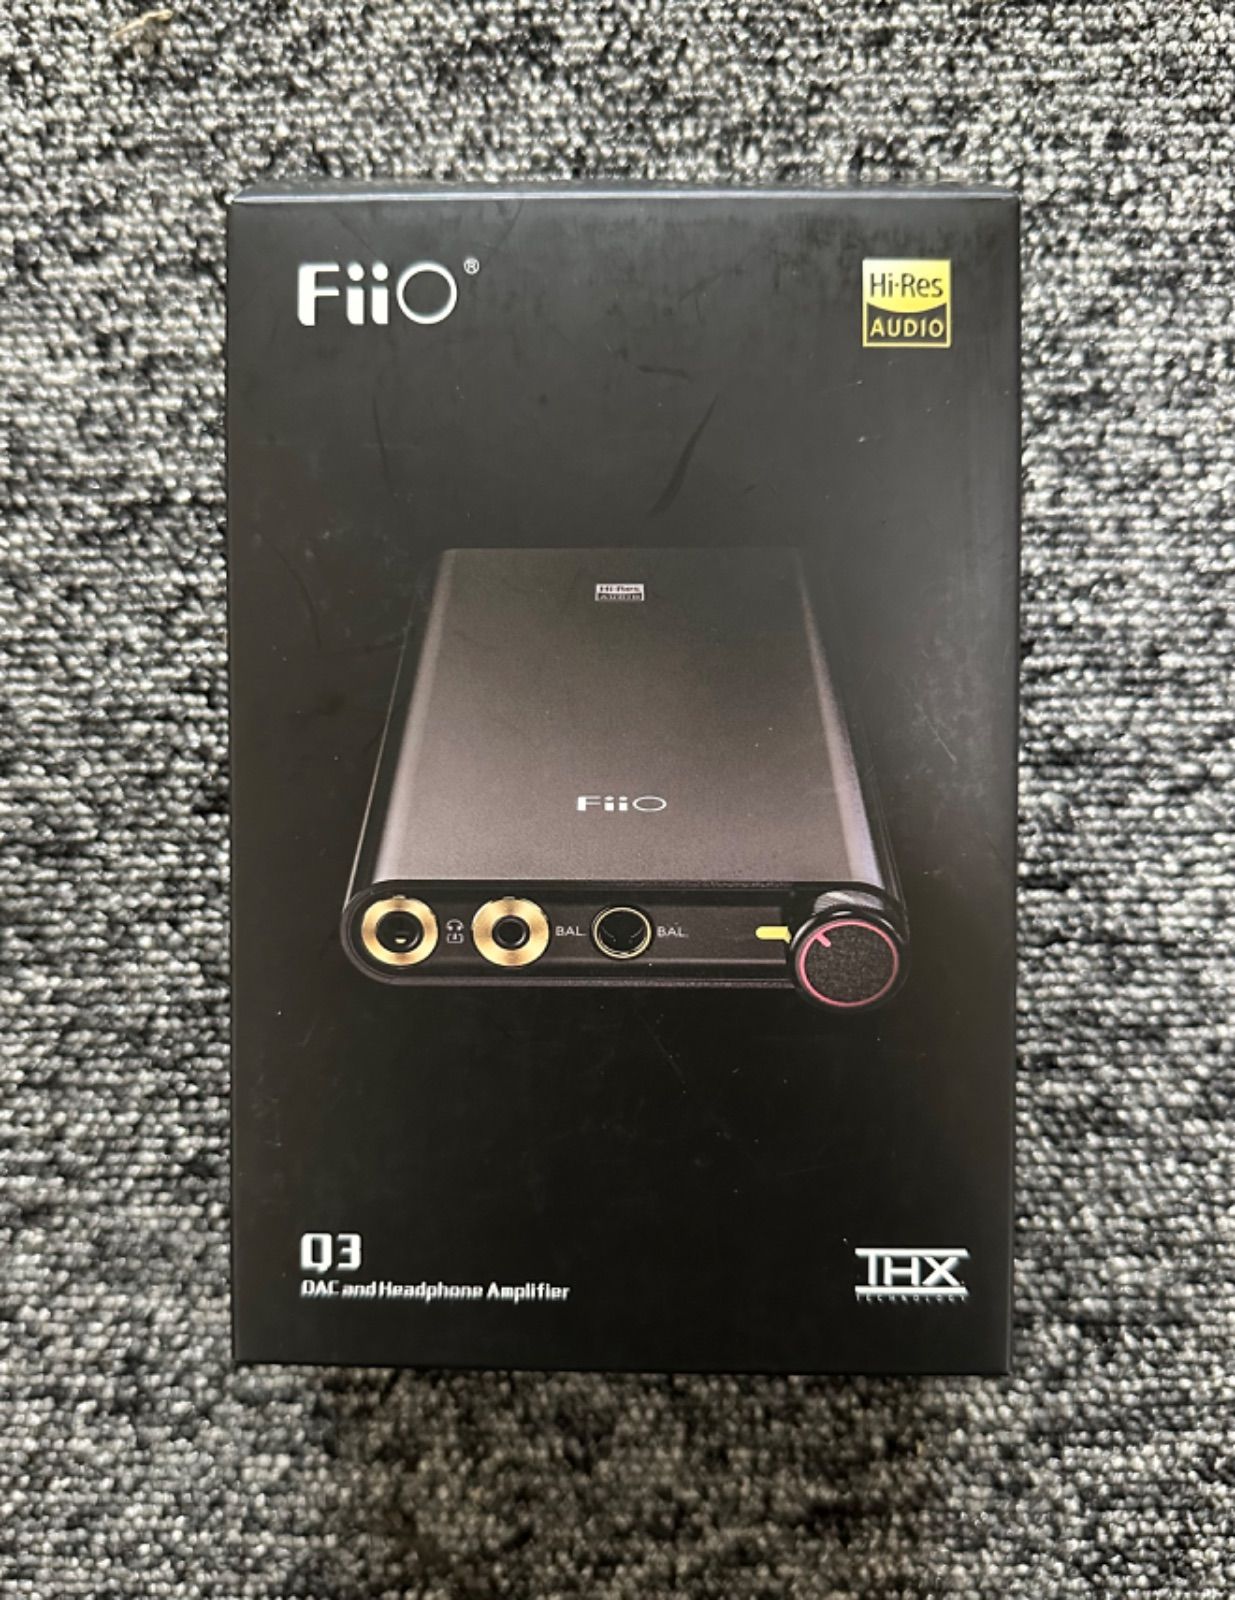 特别免费送货 Fiio Q3-2022 USB DAC内蔵ポータブルヘッドホンアンプ